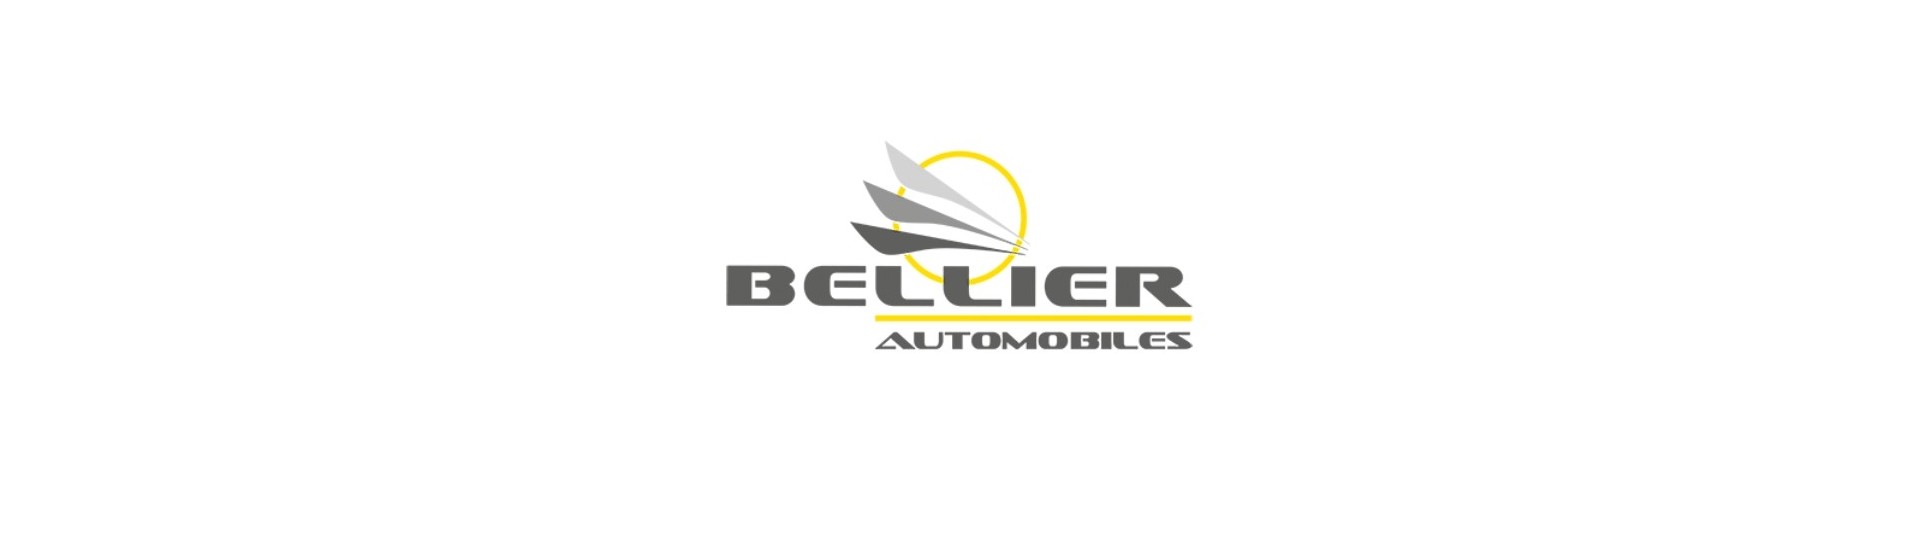 Radiator Durite till bästa pris för bil utan tillstånd Bellier